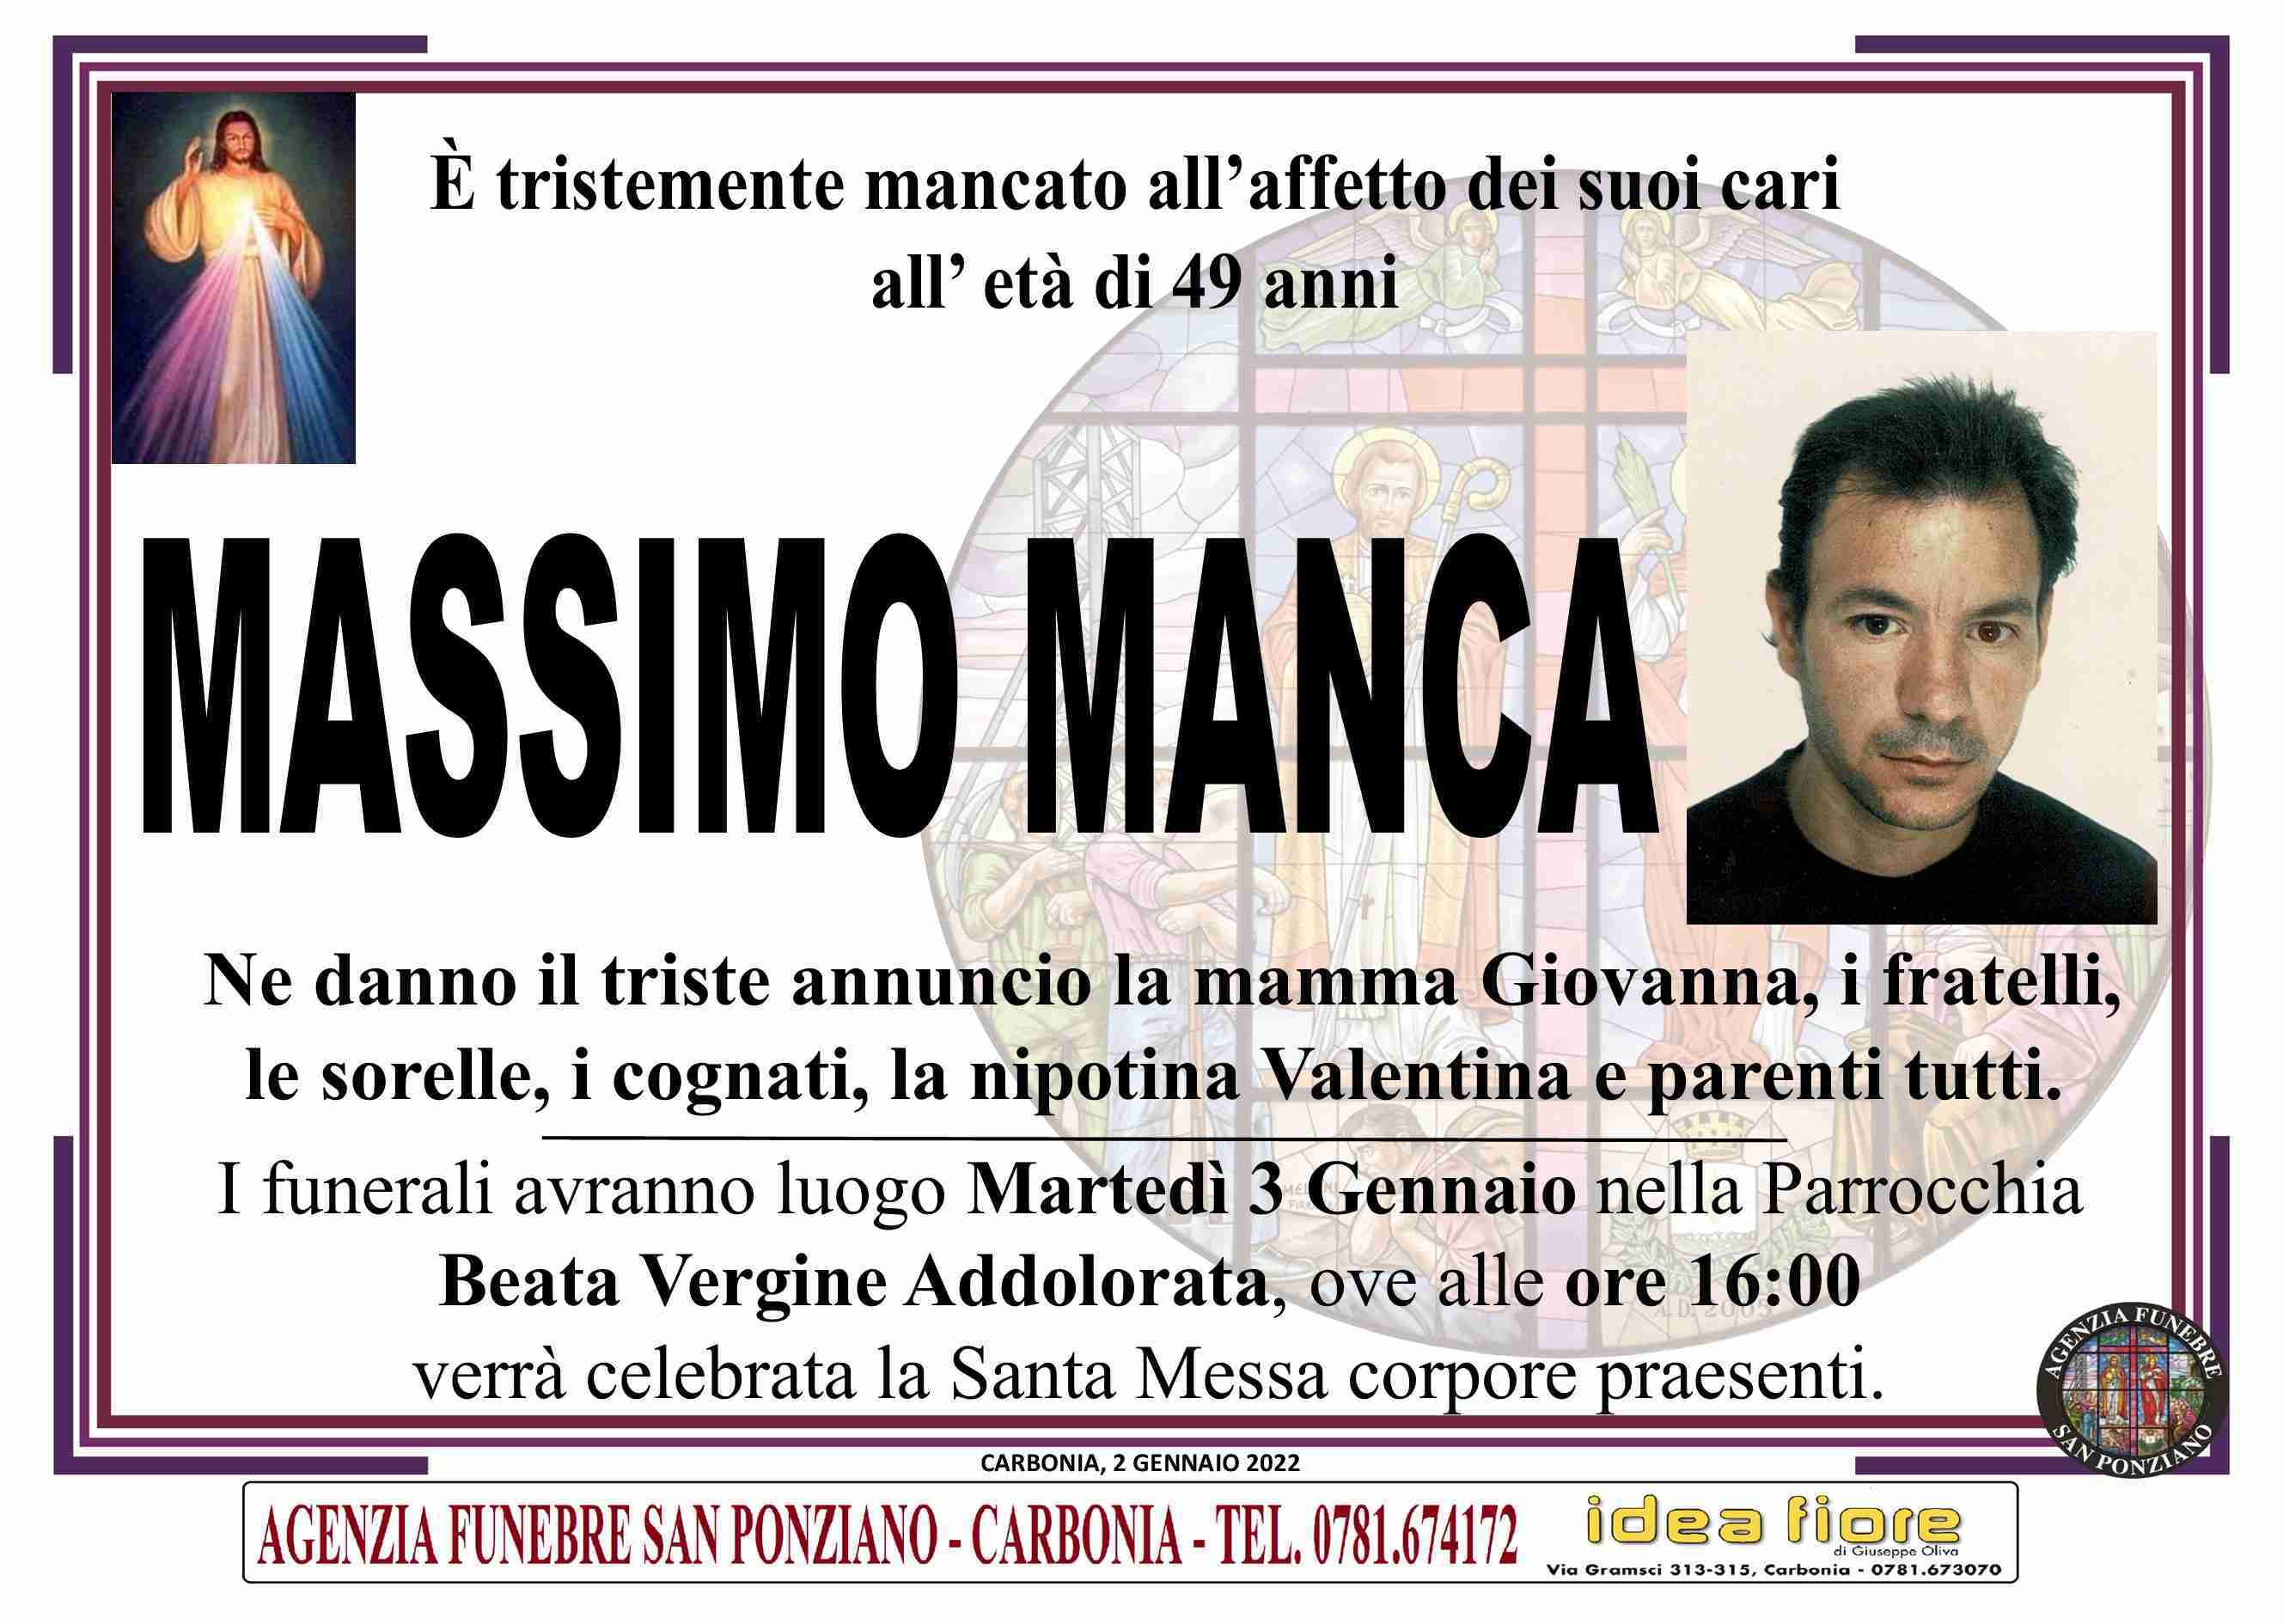 Massimo Manca